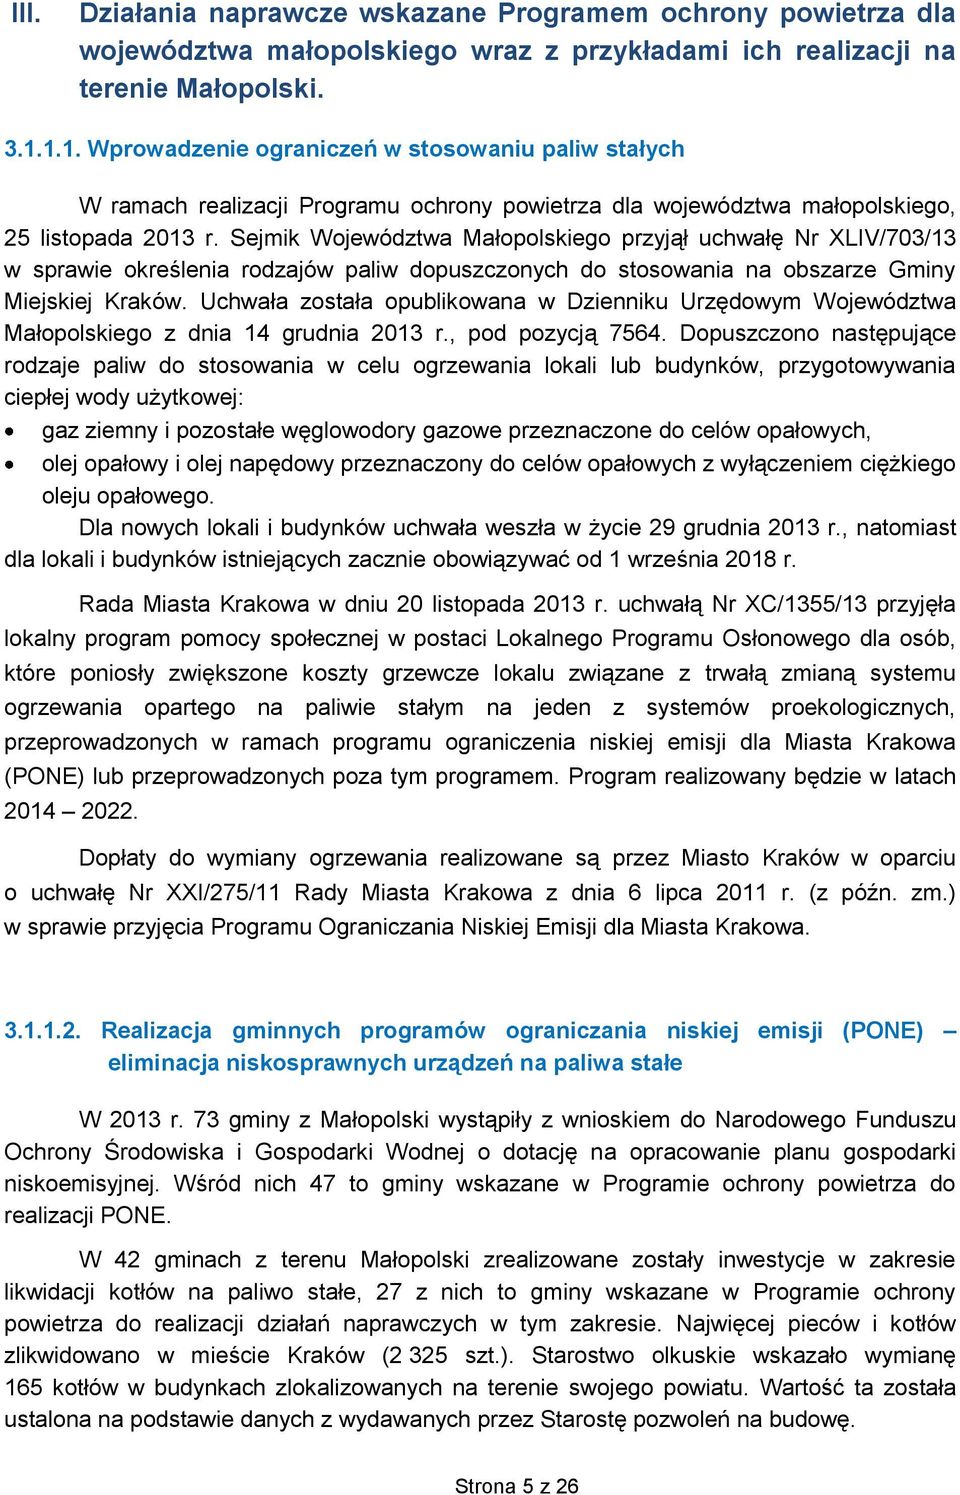 Sejmik Województwa Małopolskiego przyjął uchwałę Nr XLIV/703/13 w sprawie określenia rodzajów paliw dopuszczonych do stosowania na obszarze Gminy Miejskiej Kraków.